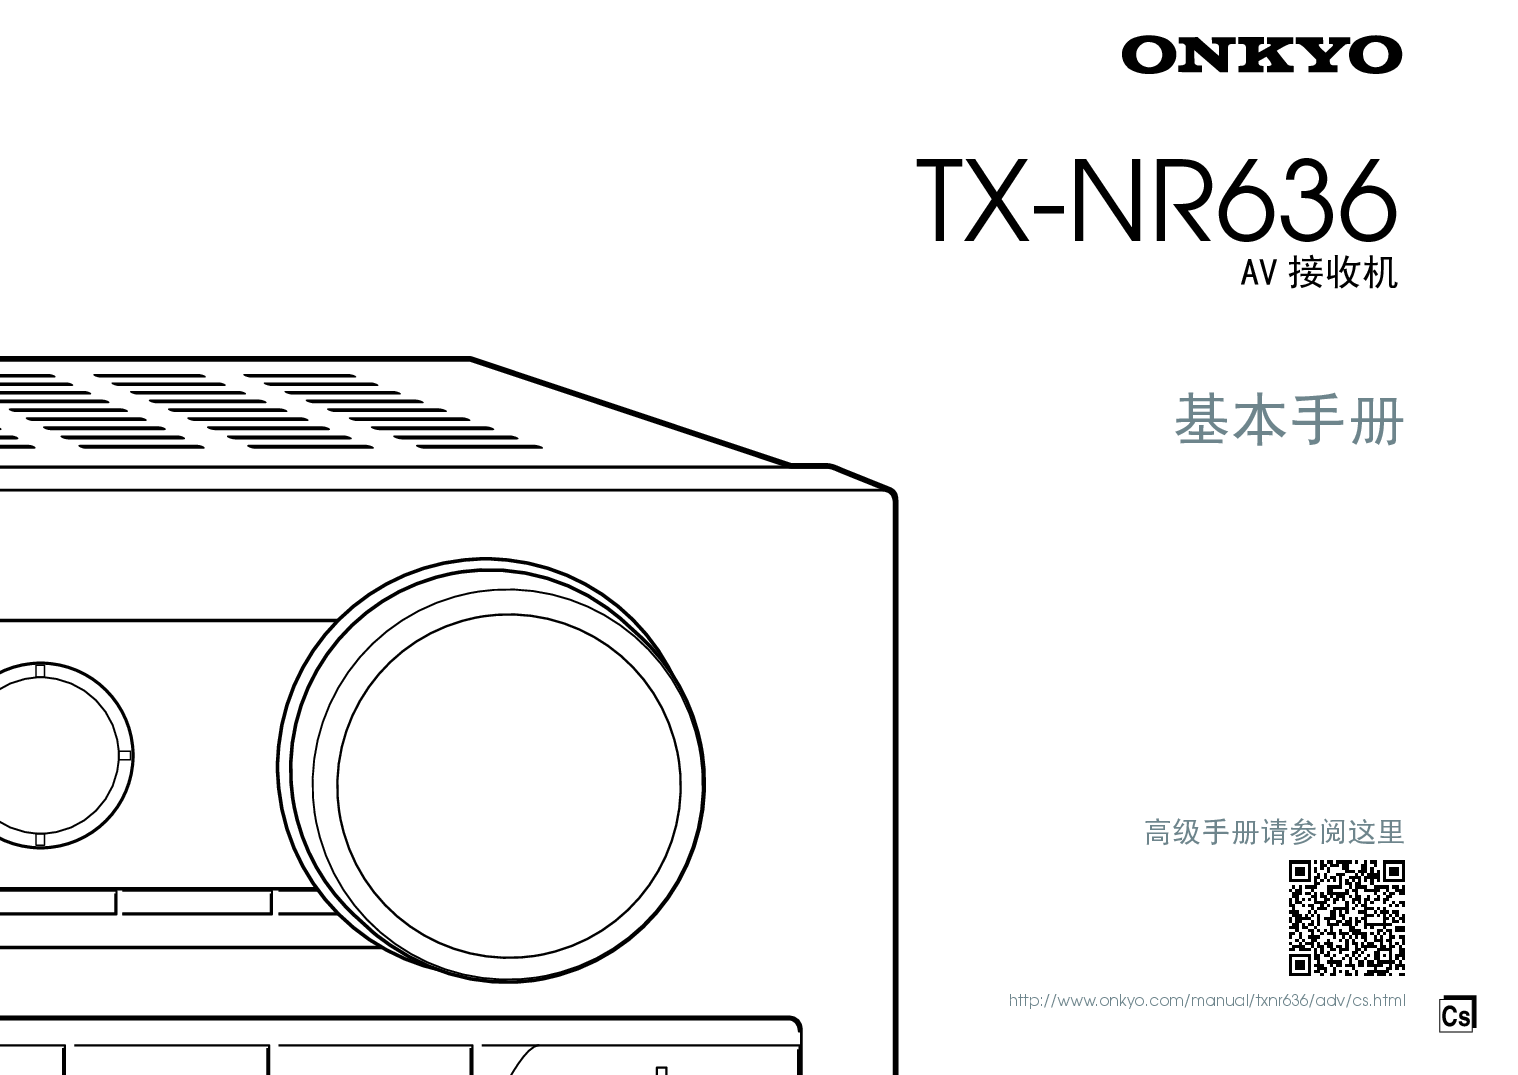 安桥 Onkyo TX-NR636 基础使用手册 封面